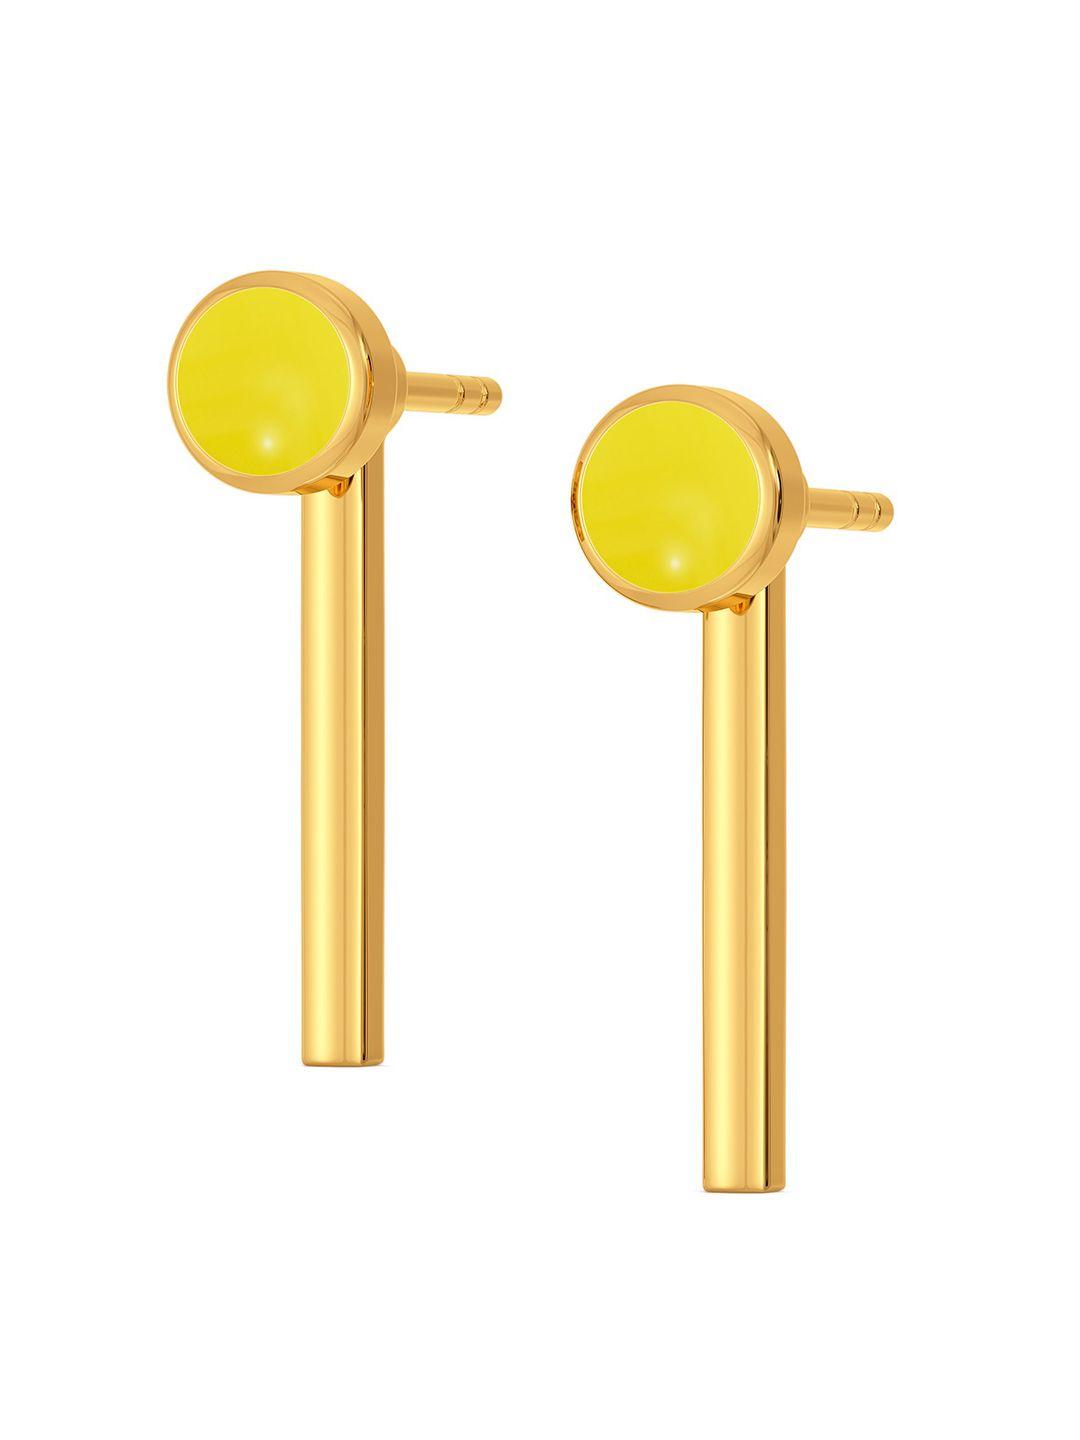 melorra ideally lit 18kt gold earrings-2.31gm